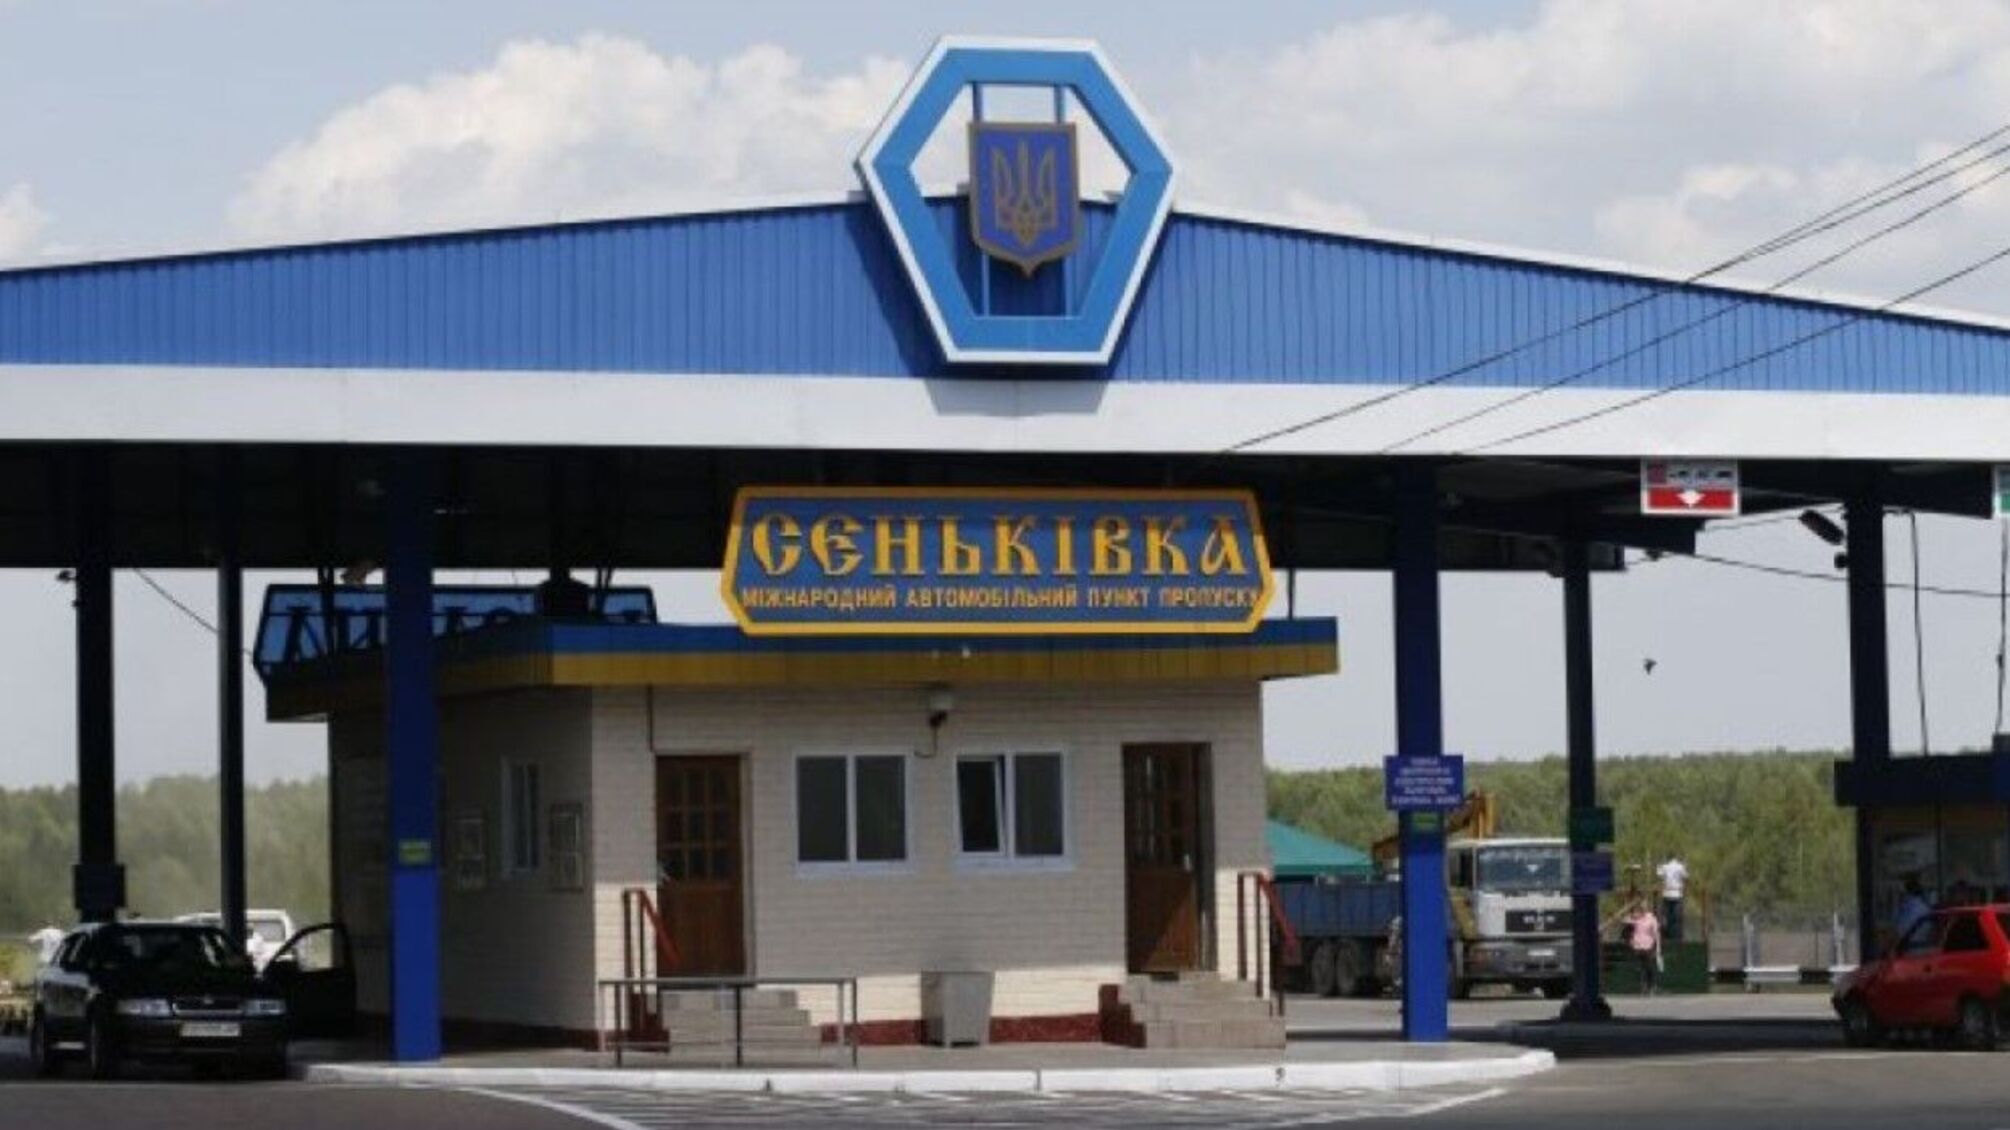 Сеньківка Чернігівської області